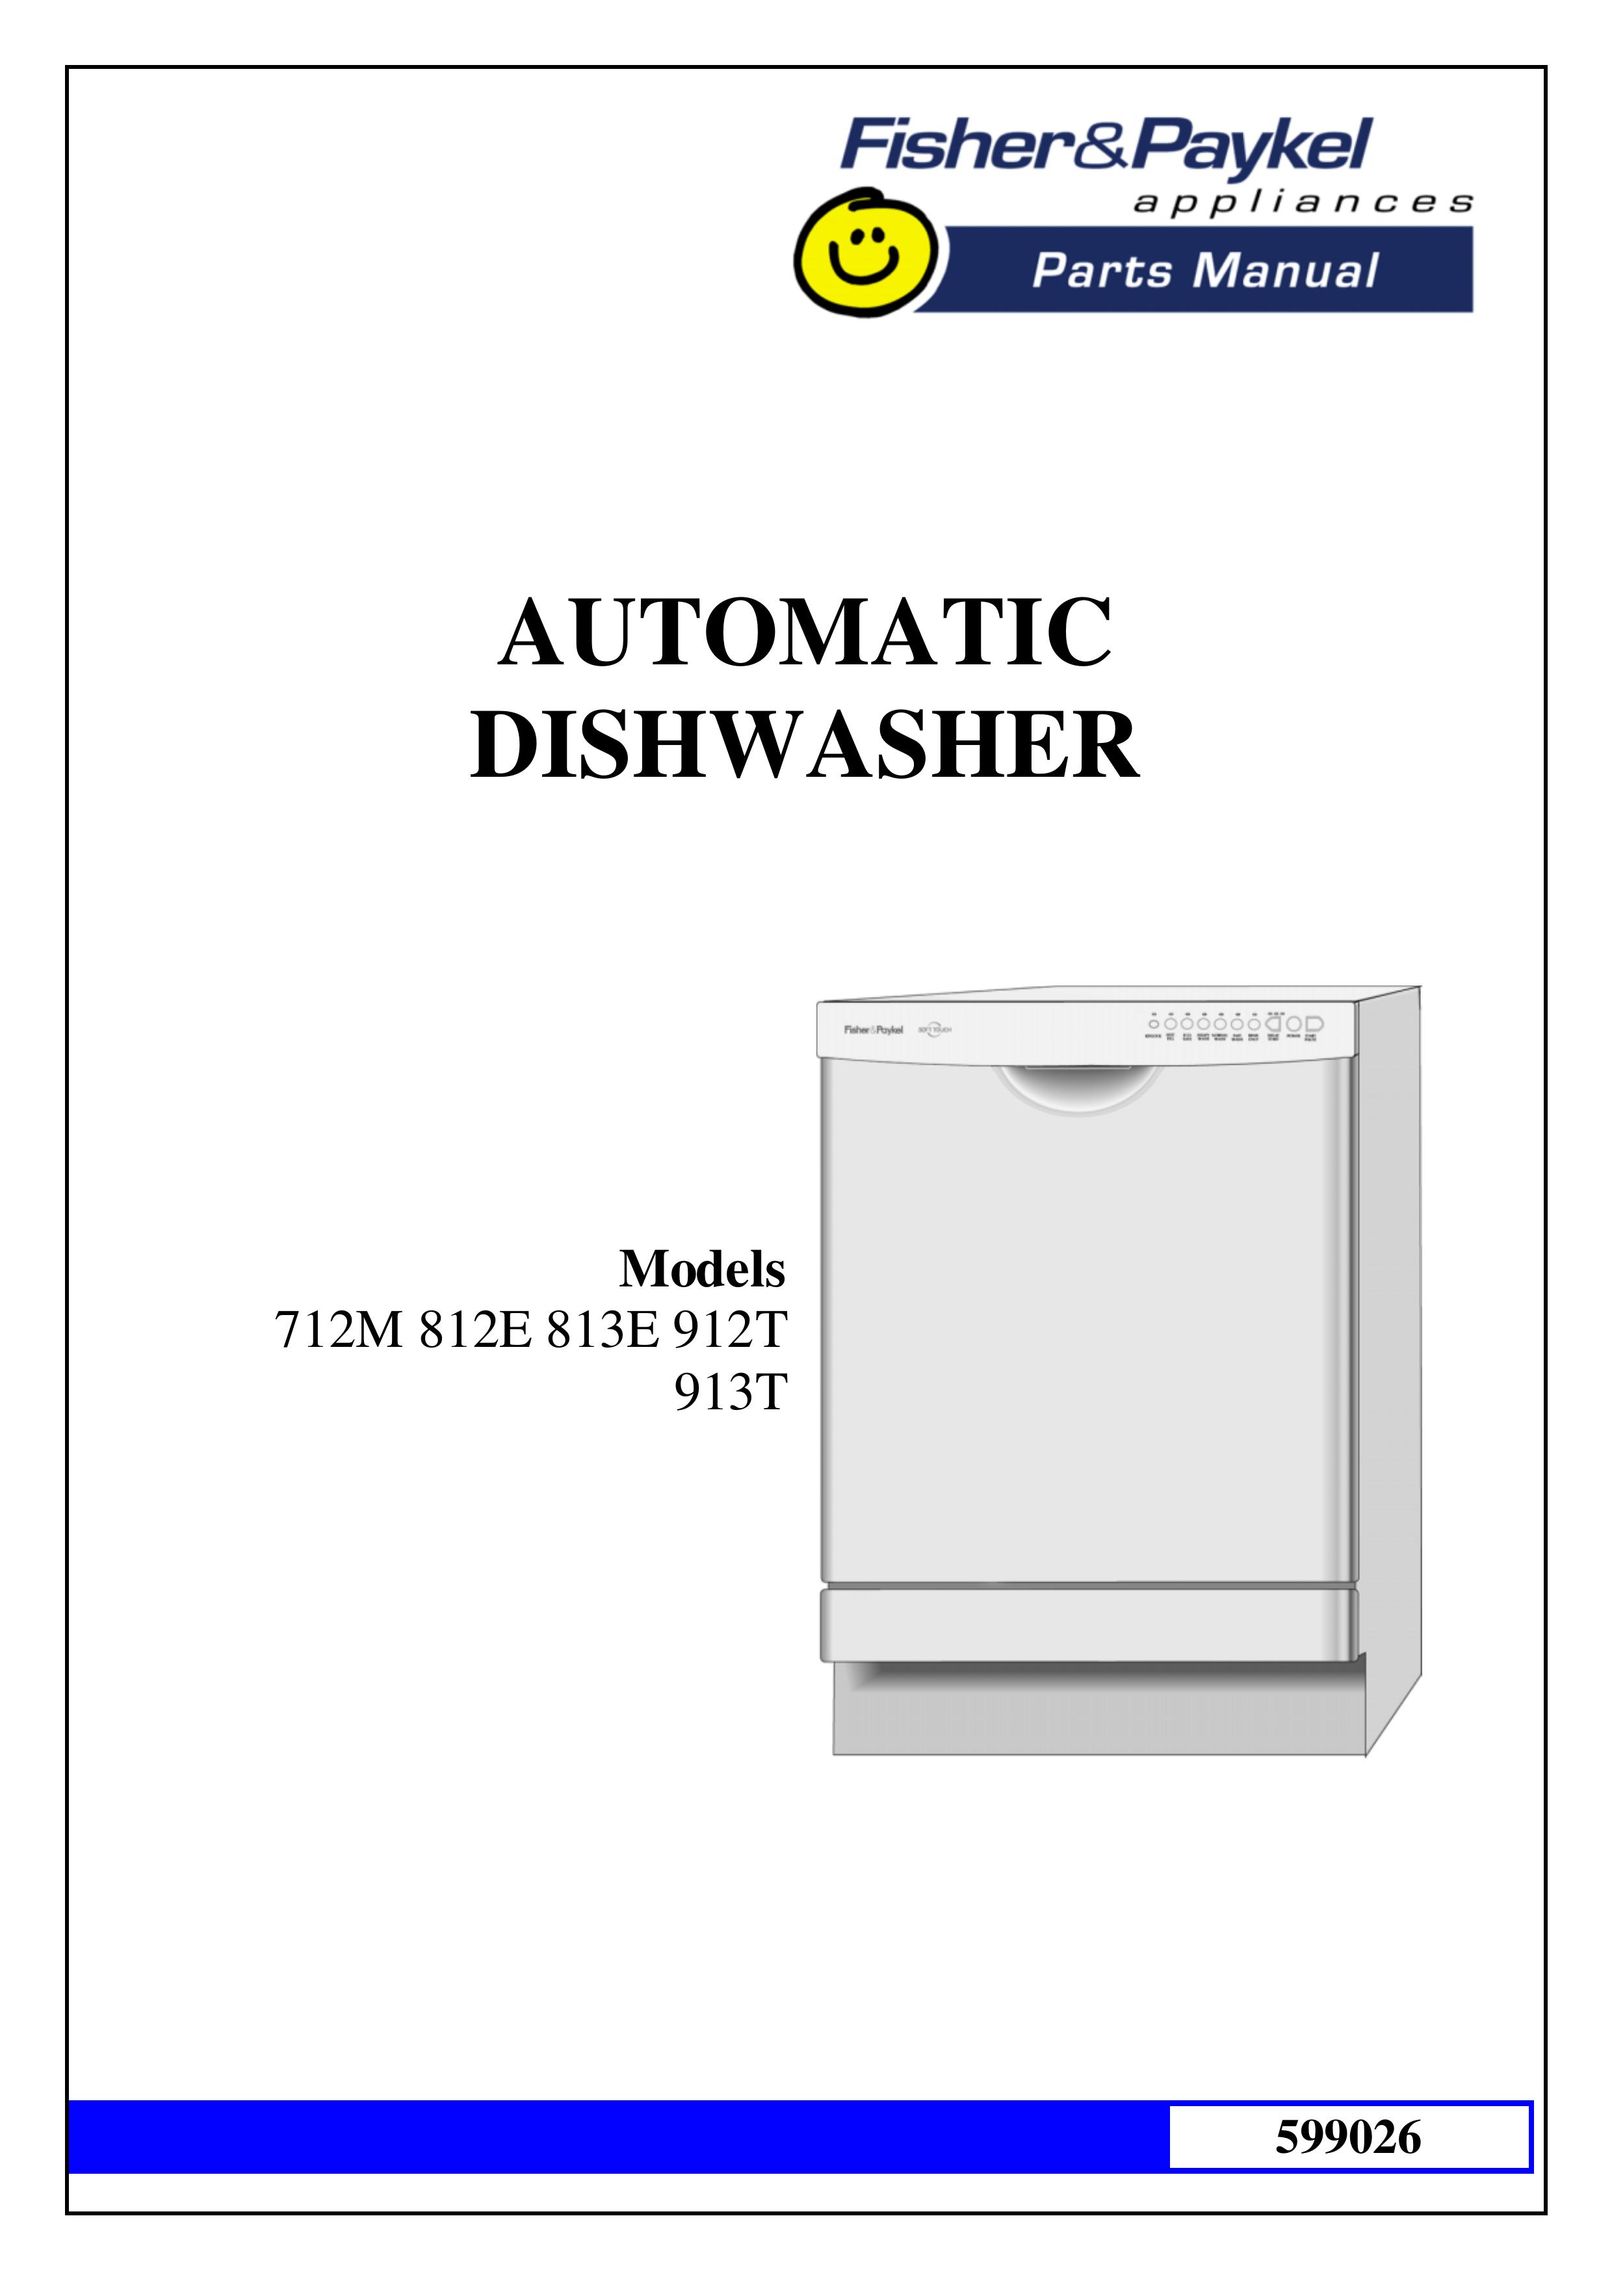 GE 913T Dishwasher User Manual